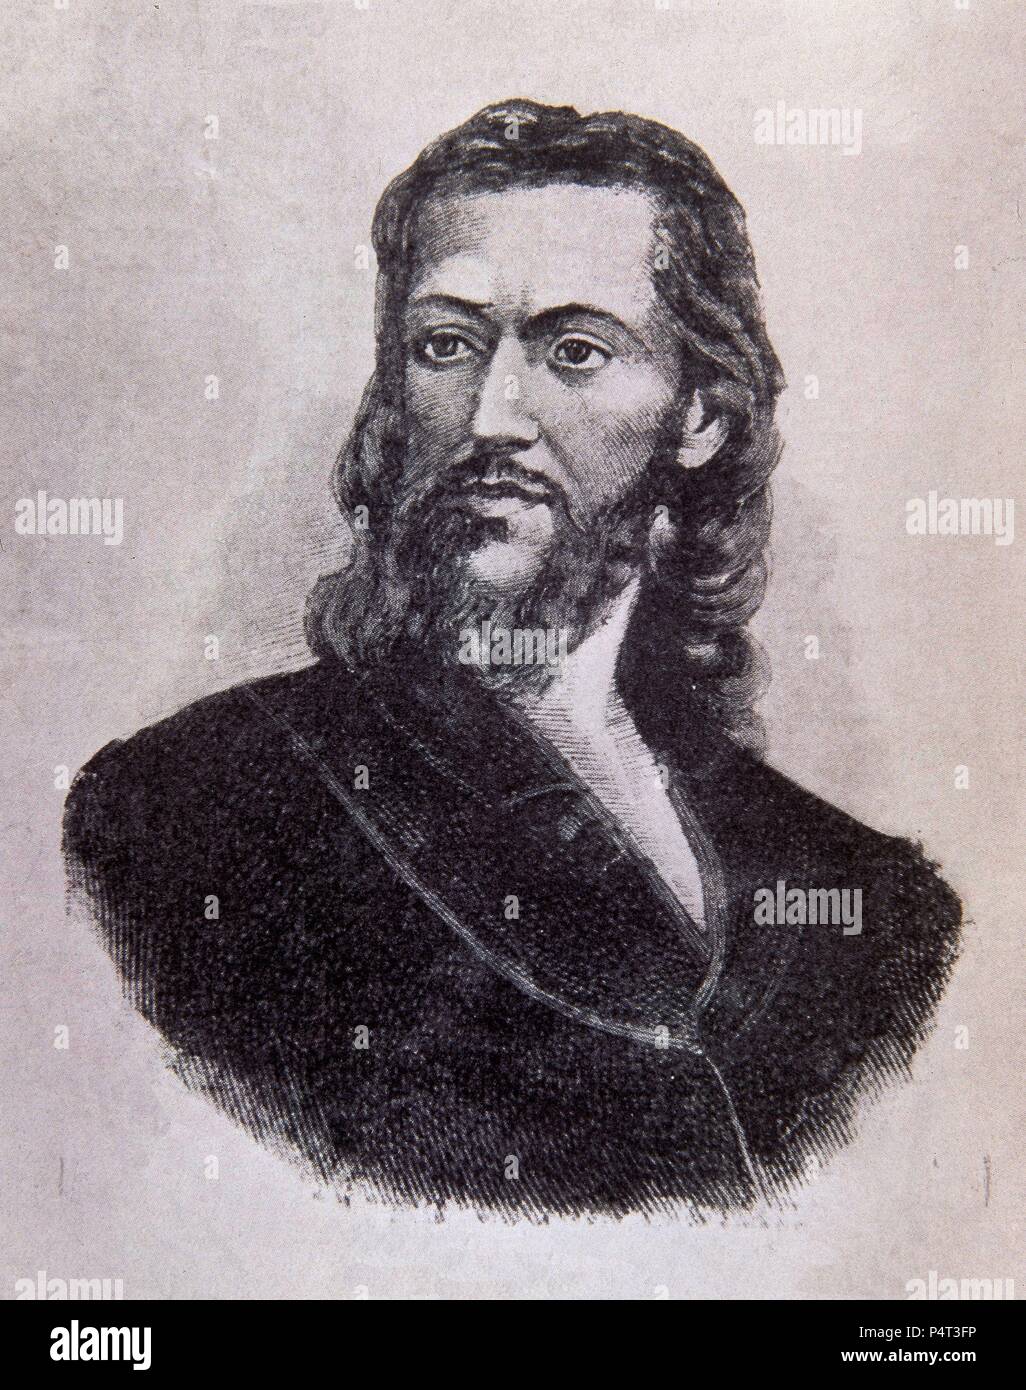 Portrait de Joaquim José da Silva Xavier connu sous le nom de Tiradentes, brésilien, membre dirigeant de mouvements politiques. Banque D'Images